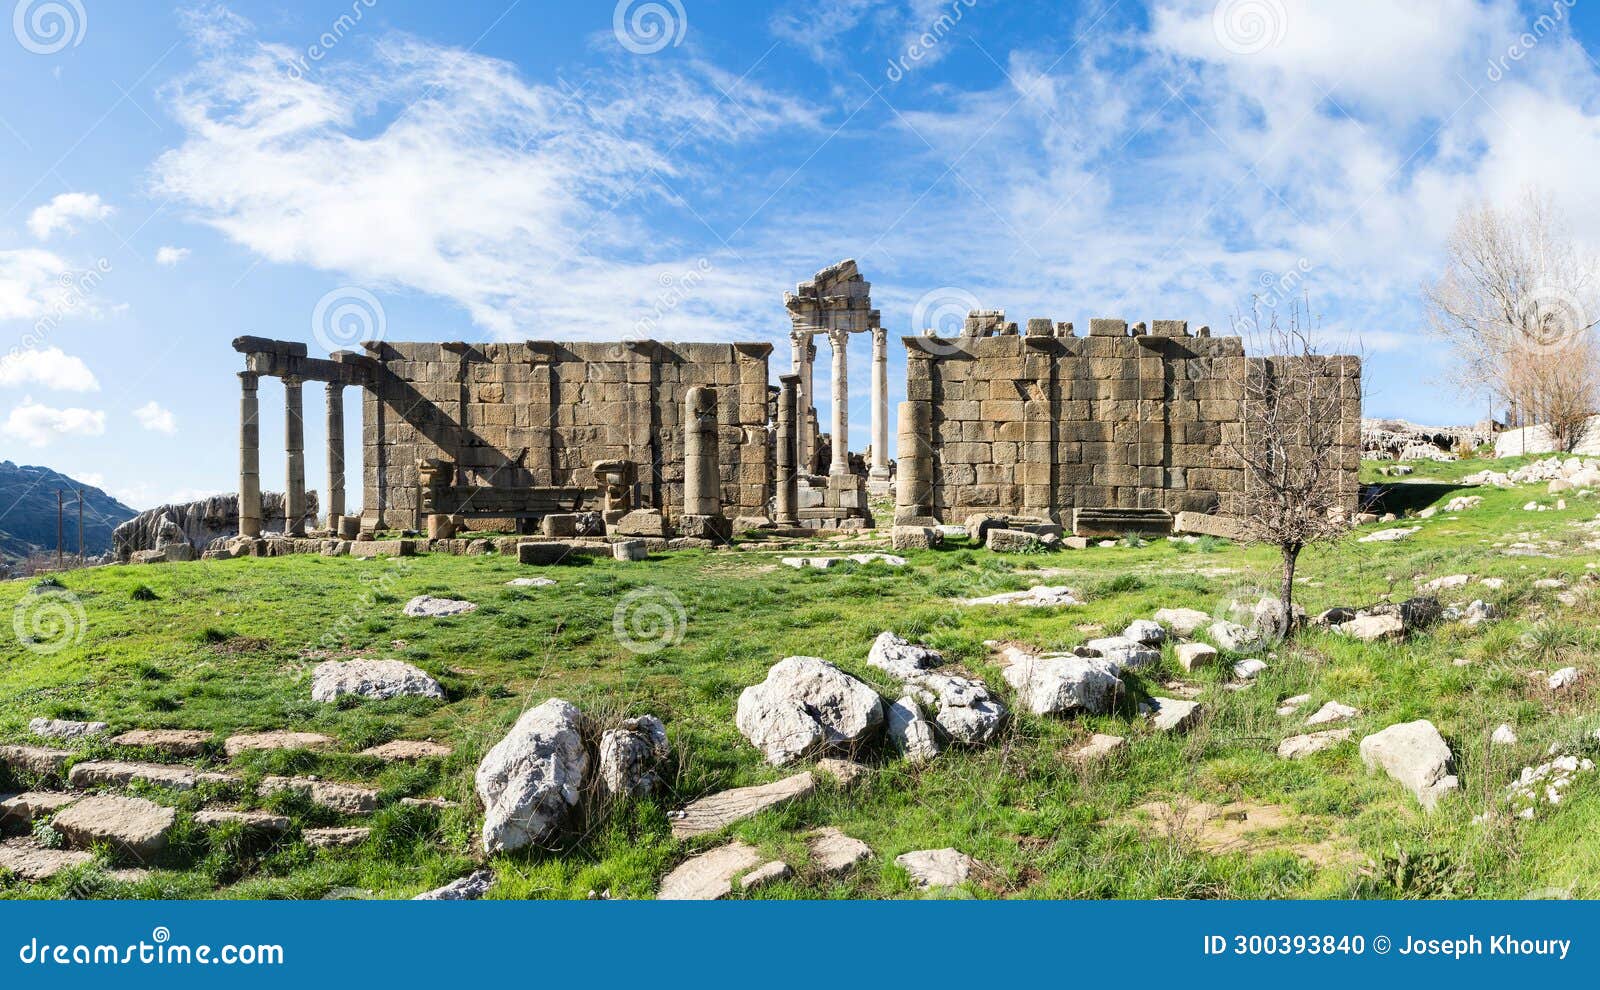 roman ruins at temple of adonis in faqra, lebanon